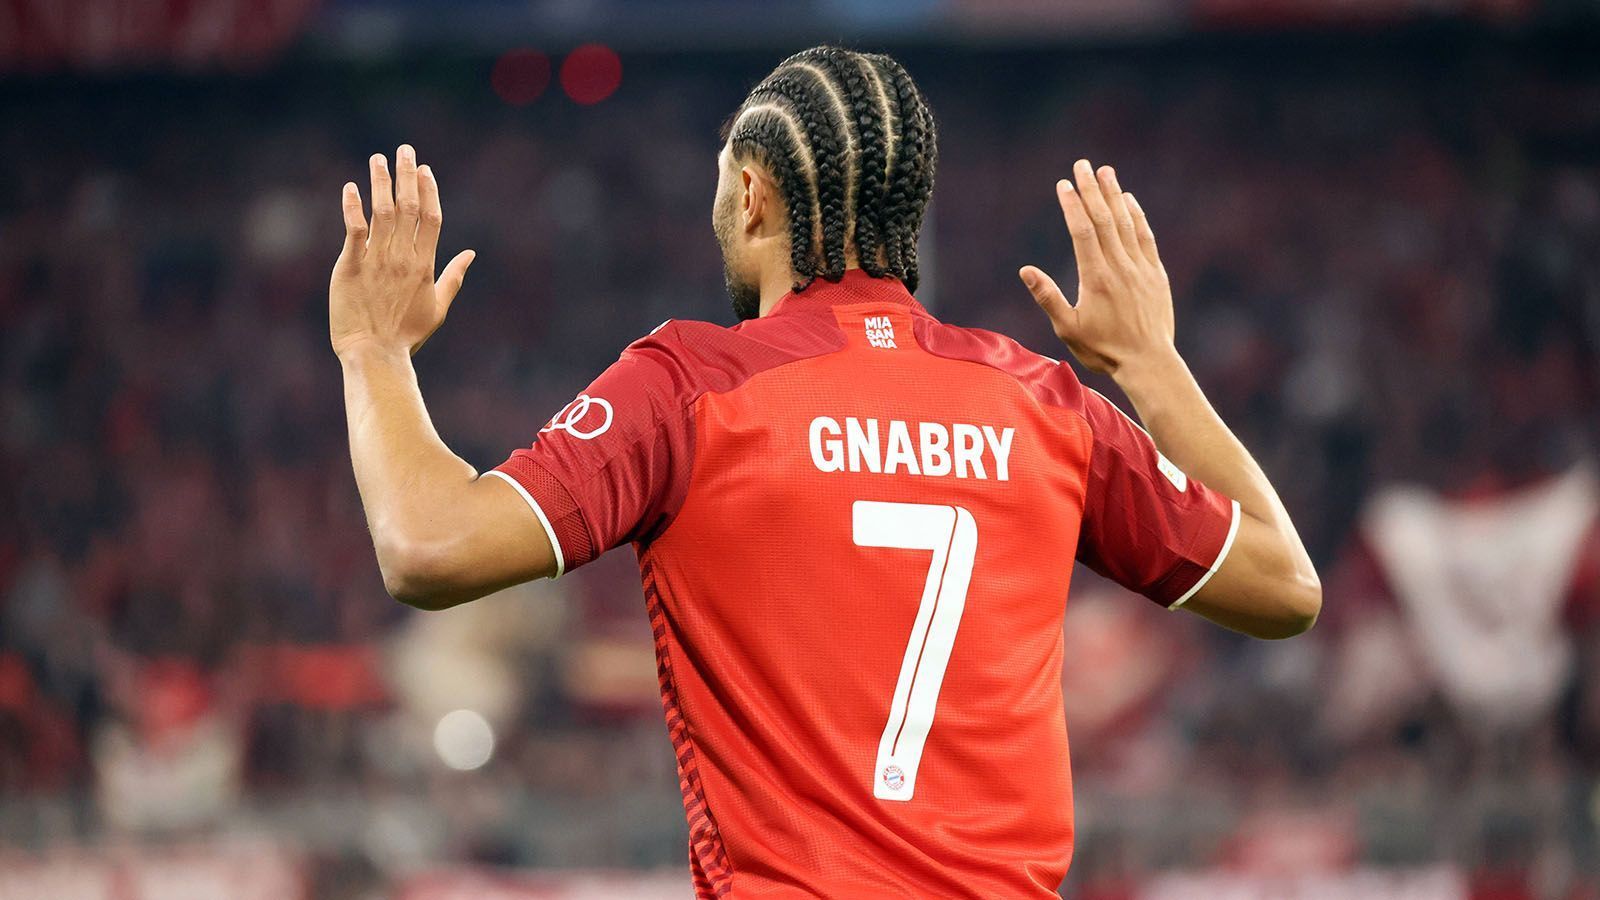 
                <strong>Serge Gnabry </strong><br>
                Der Vertrag des Nationalspielers läuft 2023 aus, bislang konnte er sich mit den Bayern-Verantwortlichen noch nicht auf eine Vertragsverlängerung einigen. Ein ablösefreier Abgang im nächsten Jahr erscheint undenkbar, sodass Gnabry den Klub im Sommer verlassen könnte, falls es bis dahin nicht doch noch zu einer Einigung im Vertragspoker gekommen ist. 
              